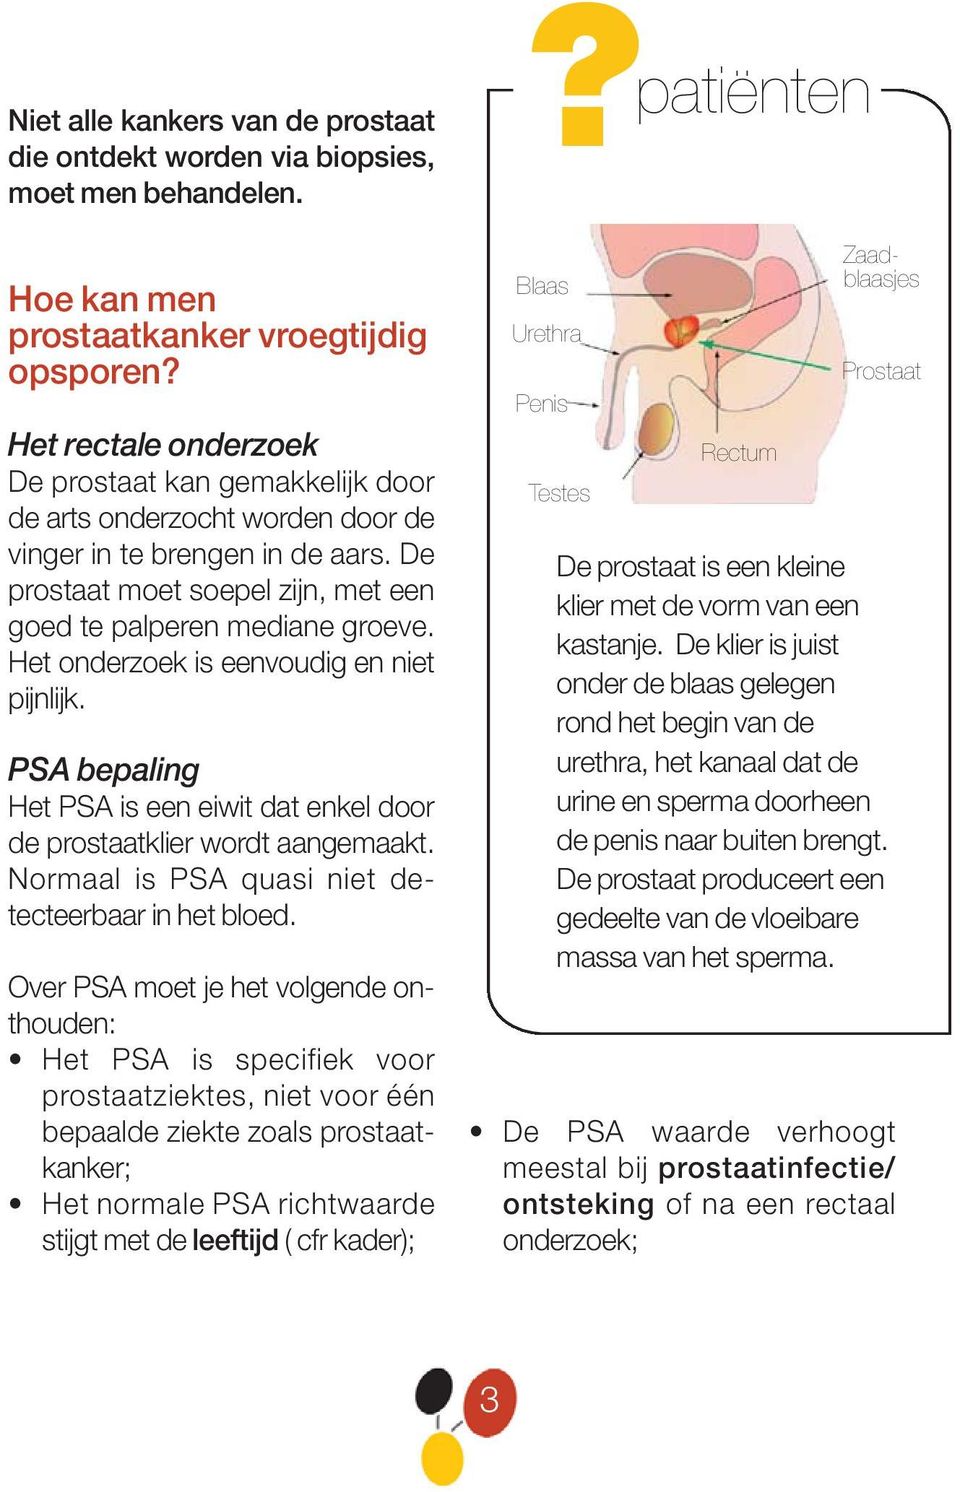 Het onderzoek is eenvoudig en niet pijnlijk. PSA bepaling Het PSA is een eiwit dat enkel door de prostaatklier wordt aangemaakt. Normaal is PSA quasi niet detecteerbaar in het bloed.